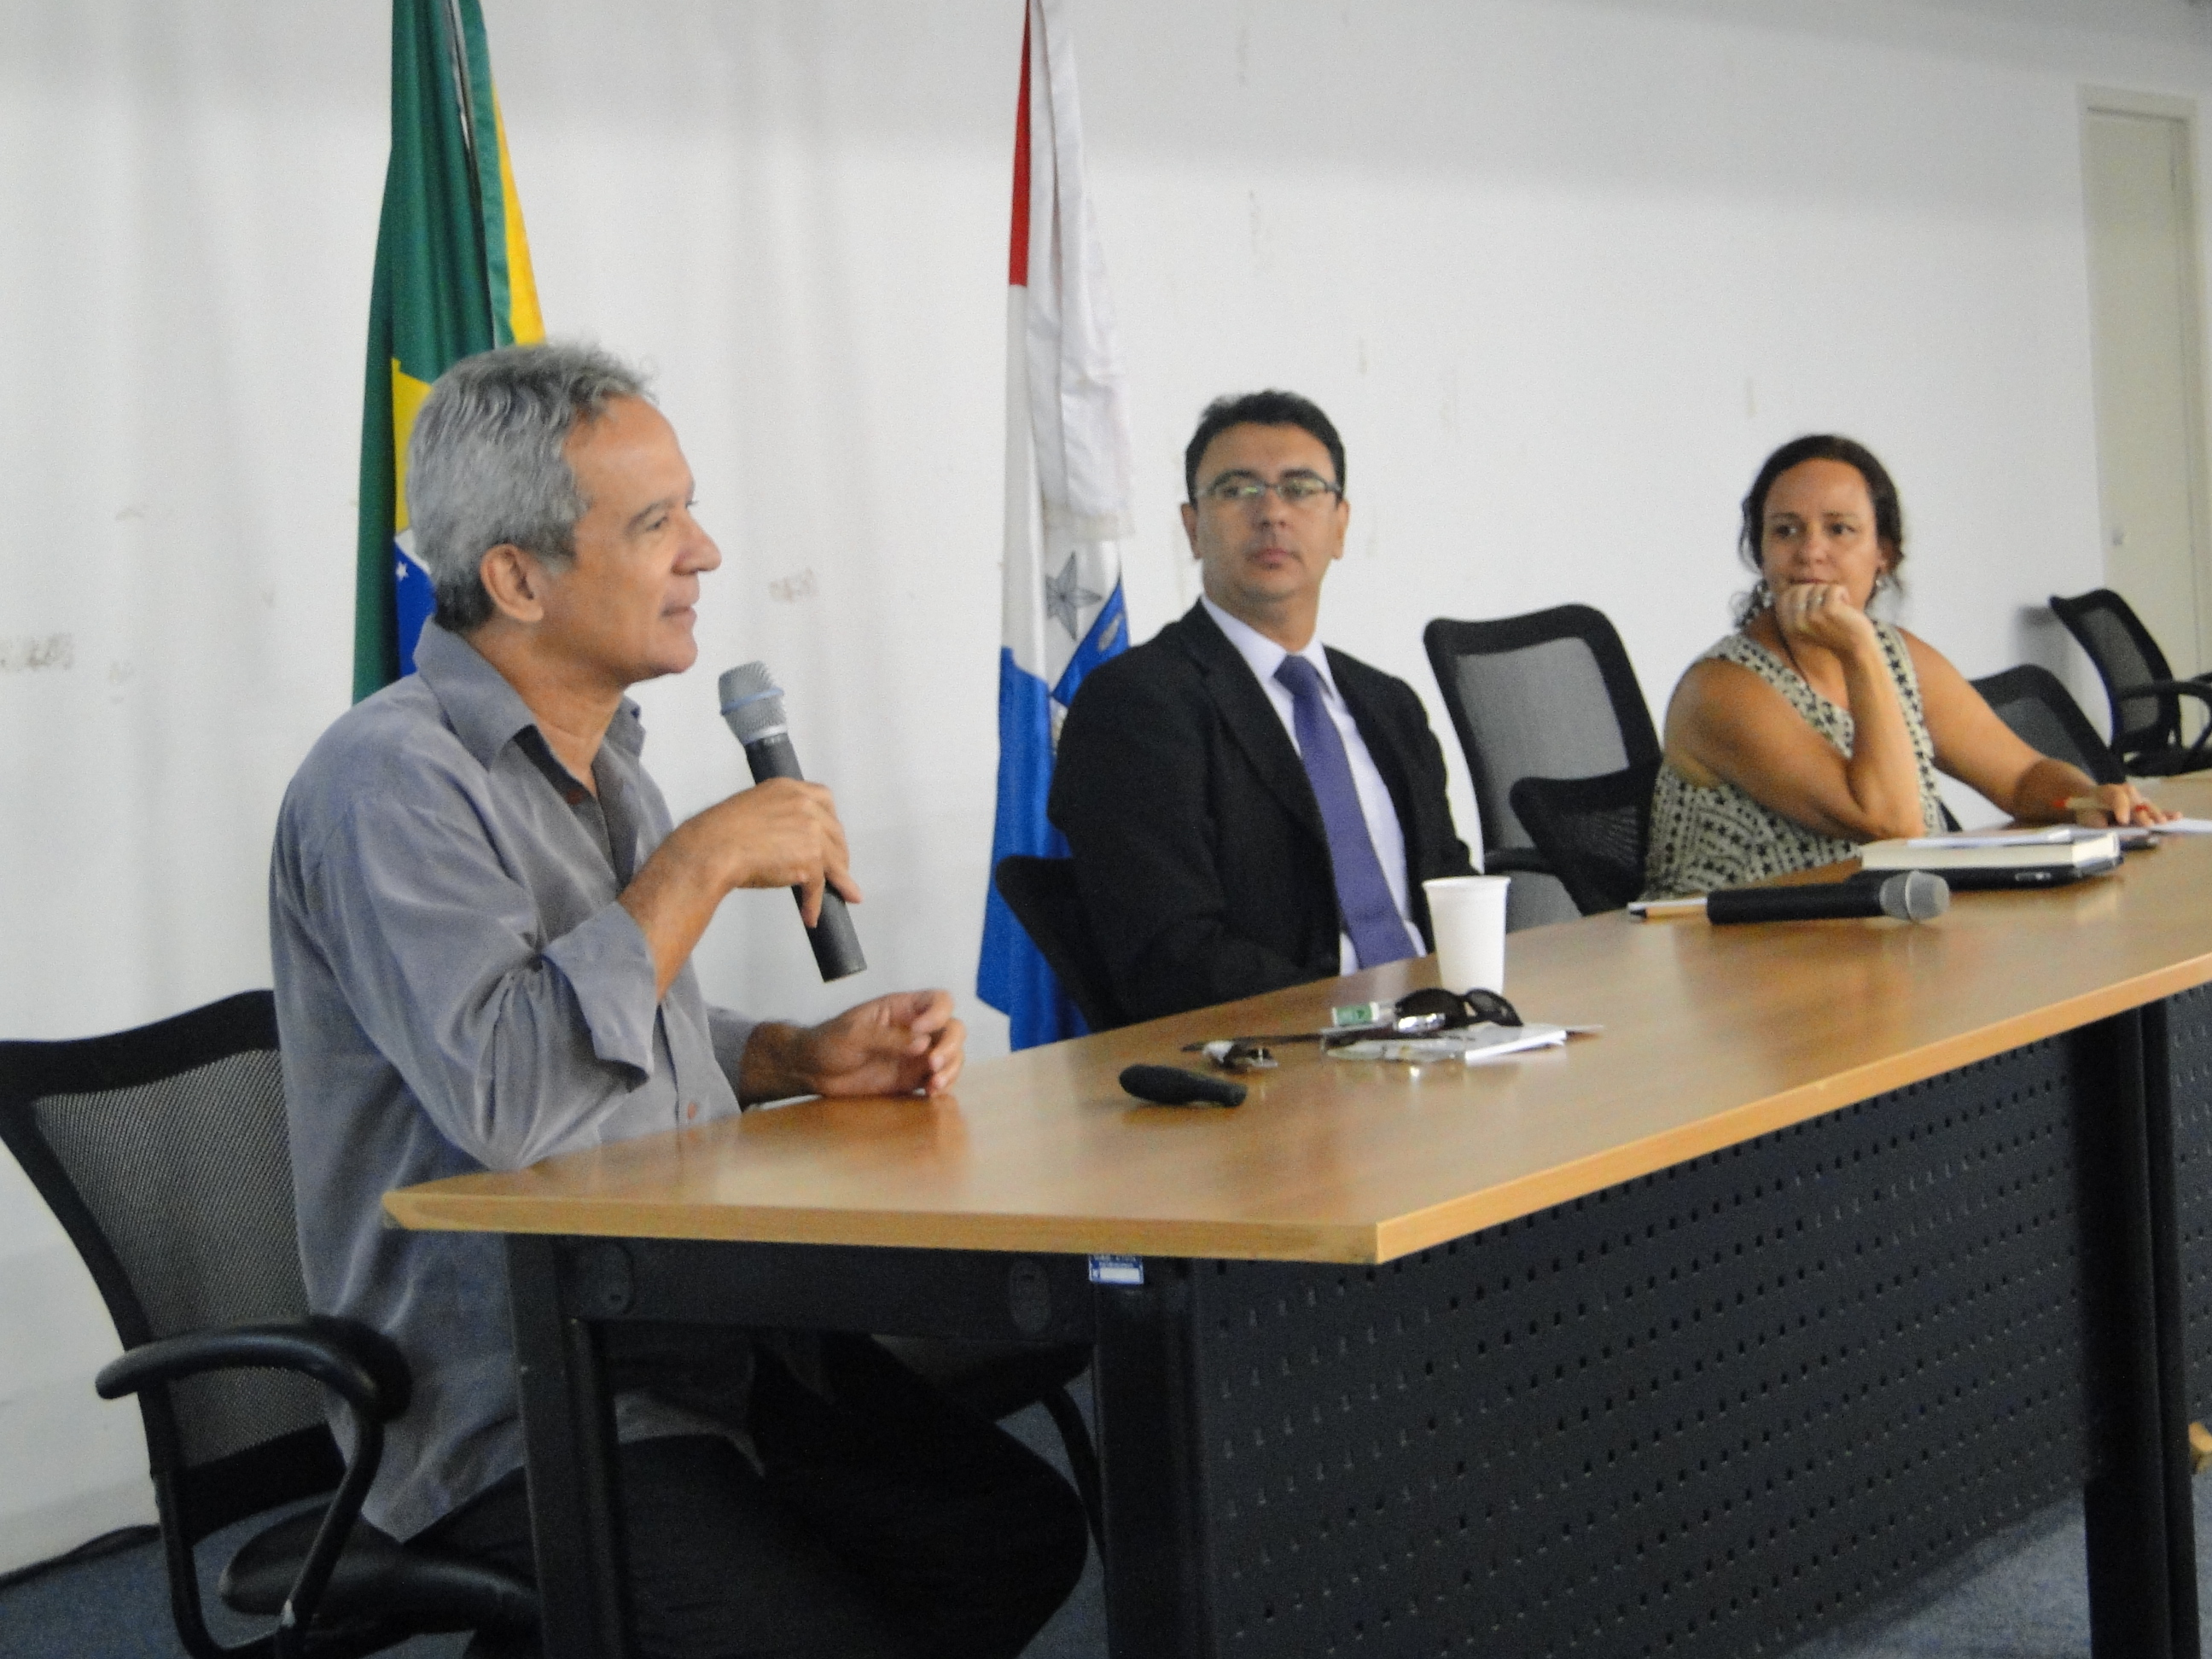 Desenvolve é a ferramenta chave para o crescimento de Alagoas, apontam especialistas